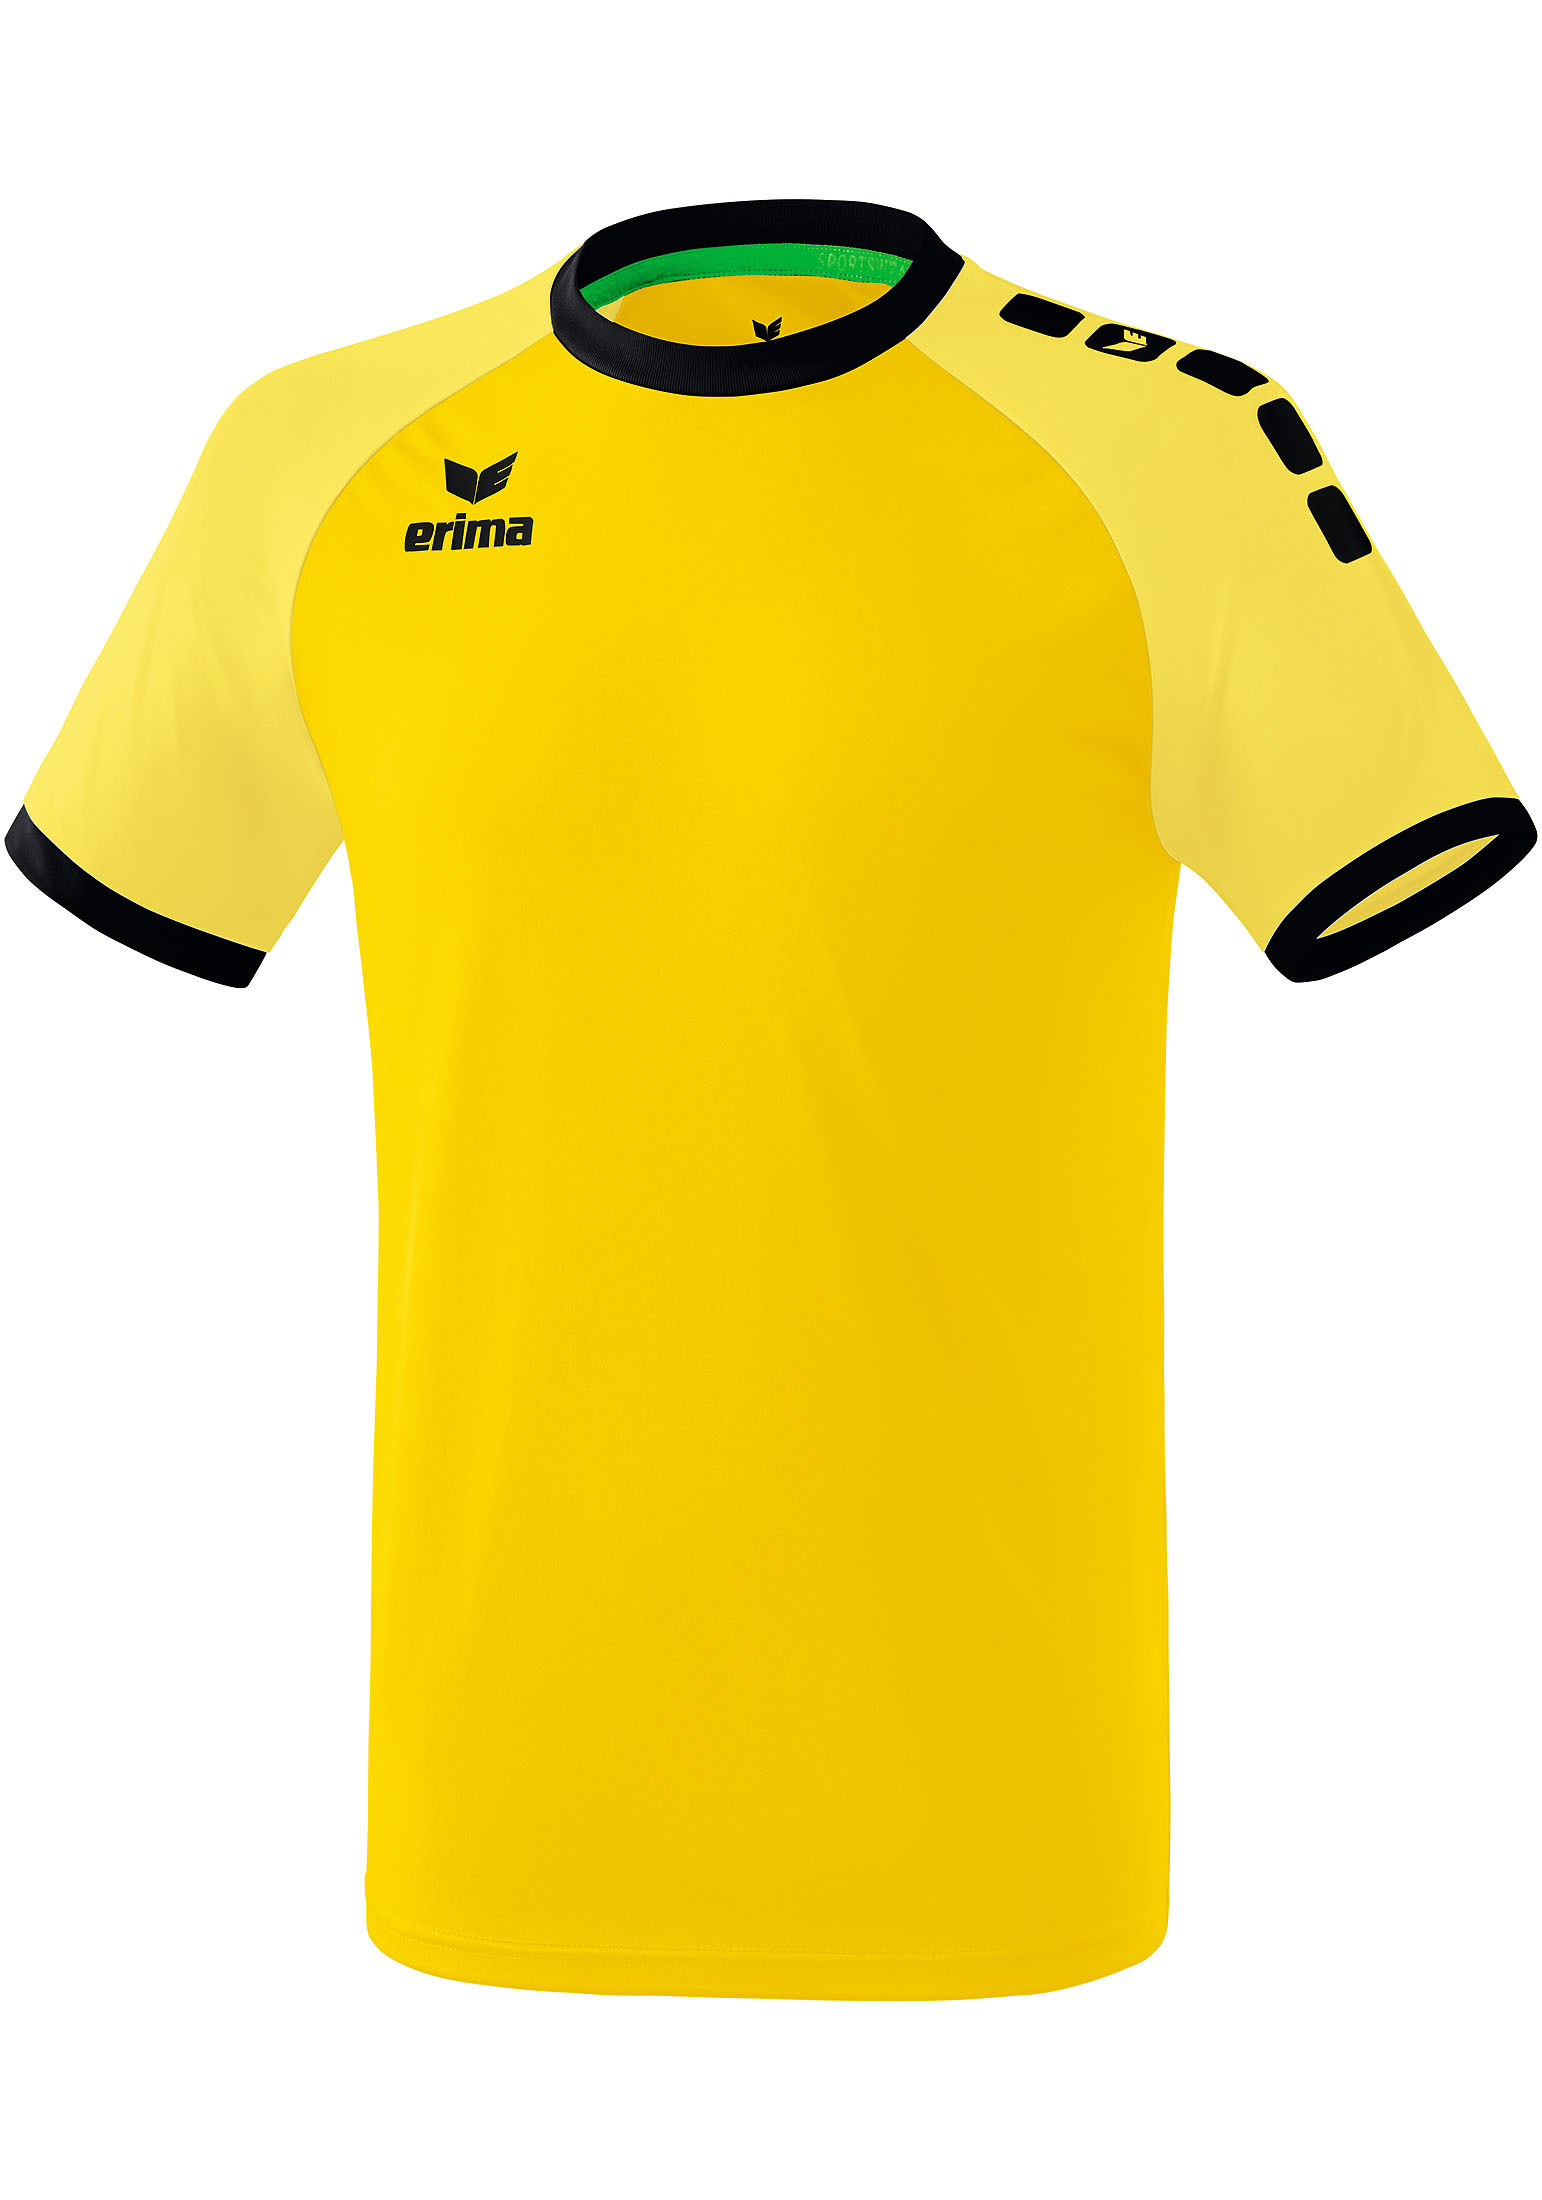 Рубашка erima Zenari 3.0 Trikot, желтый рубашка erima zenari 3 0 trikot серый меланж черный темно серый